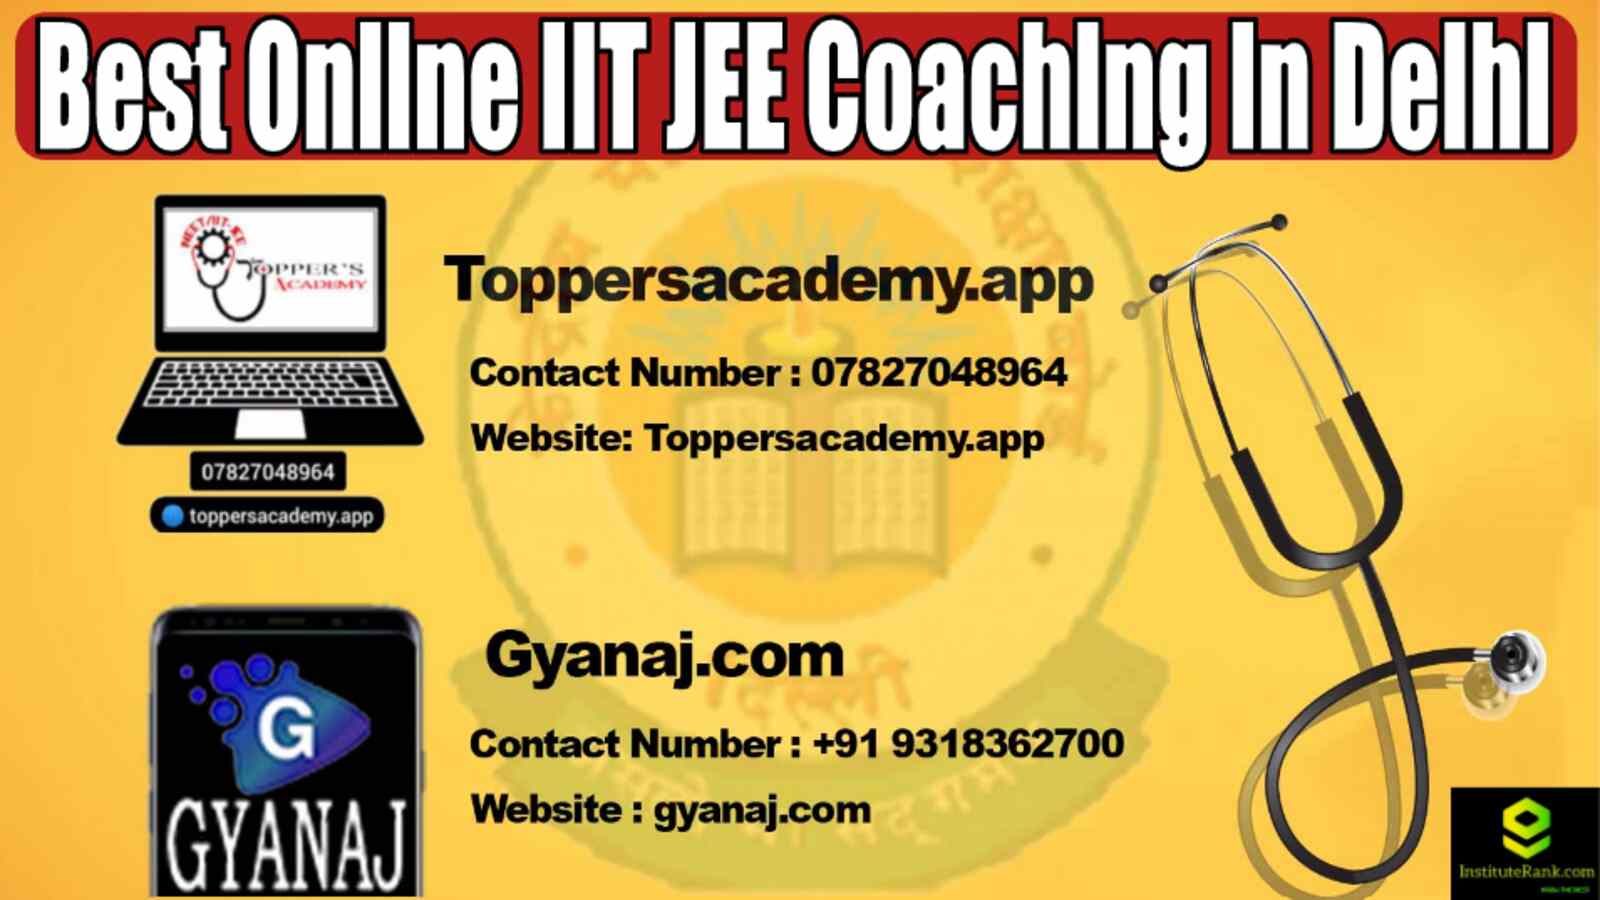 Best Online IIT JEE Coaching in Delhi 2022